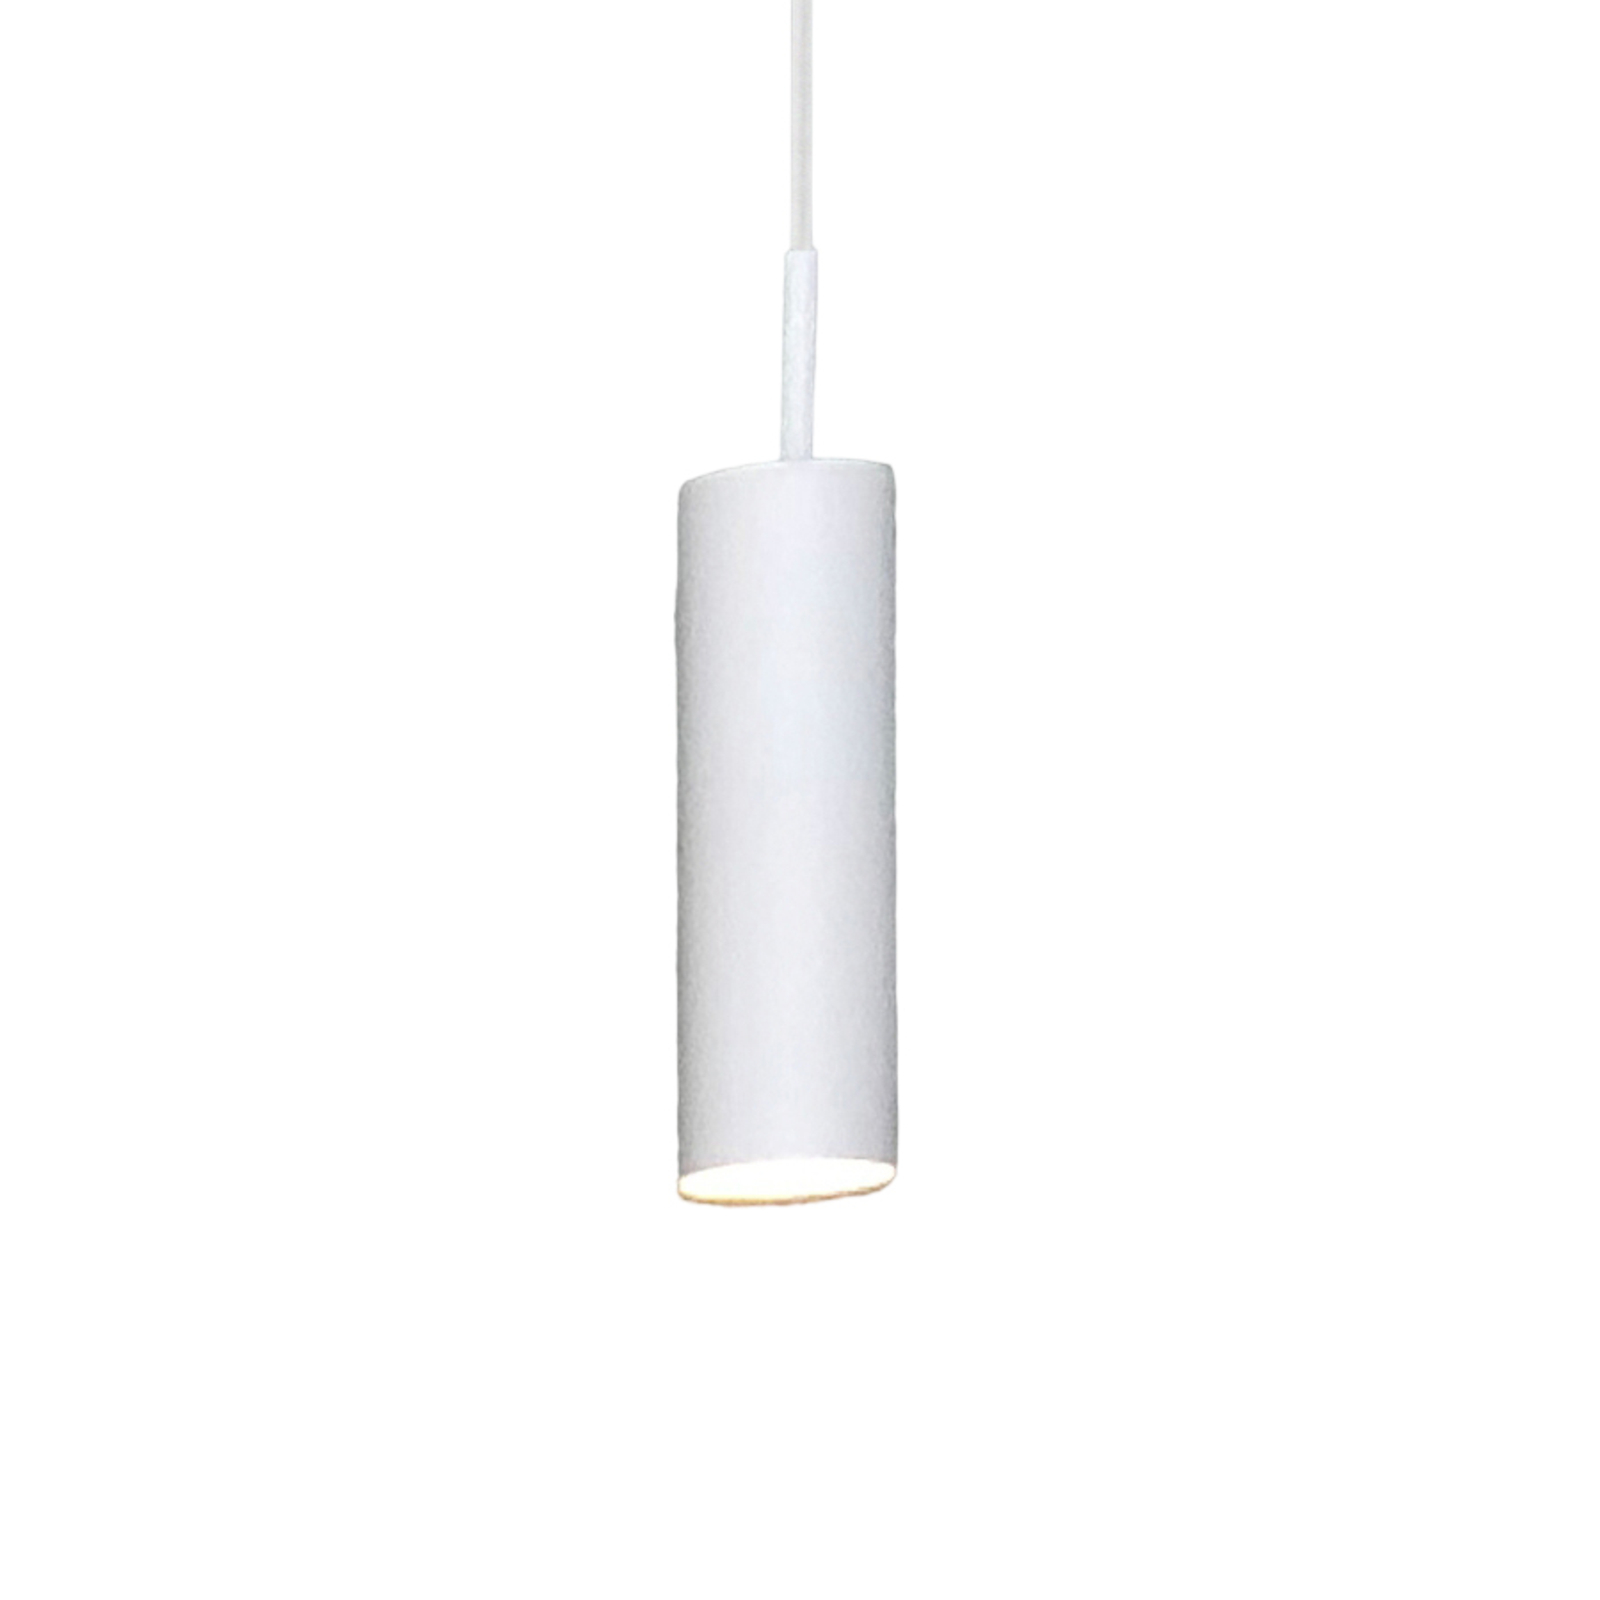 Hanglamp MIB 6 met GU10-fitting, wit